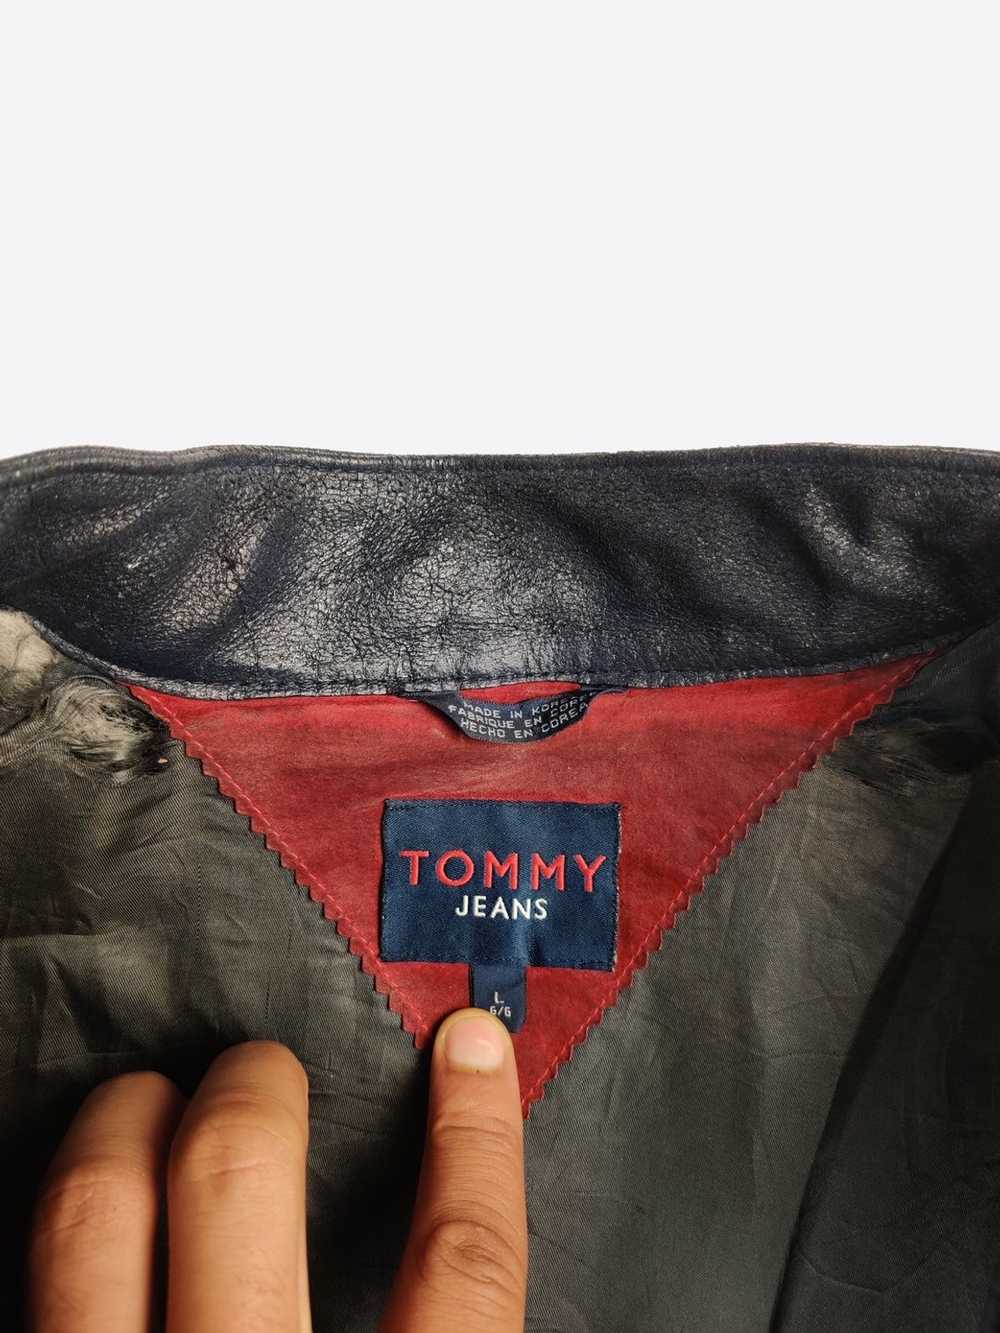 Leather Jacket × Tommy Hilfiger × Vintage Tommy H… - image 3